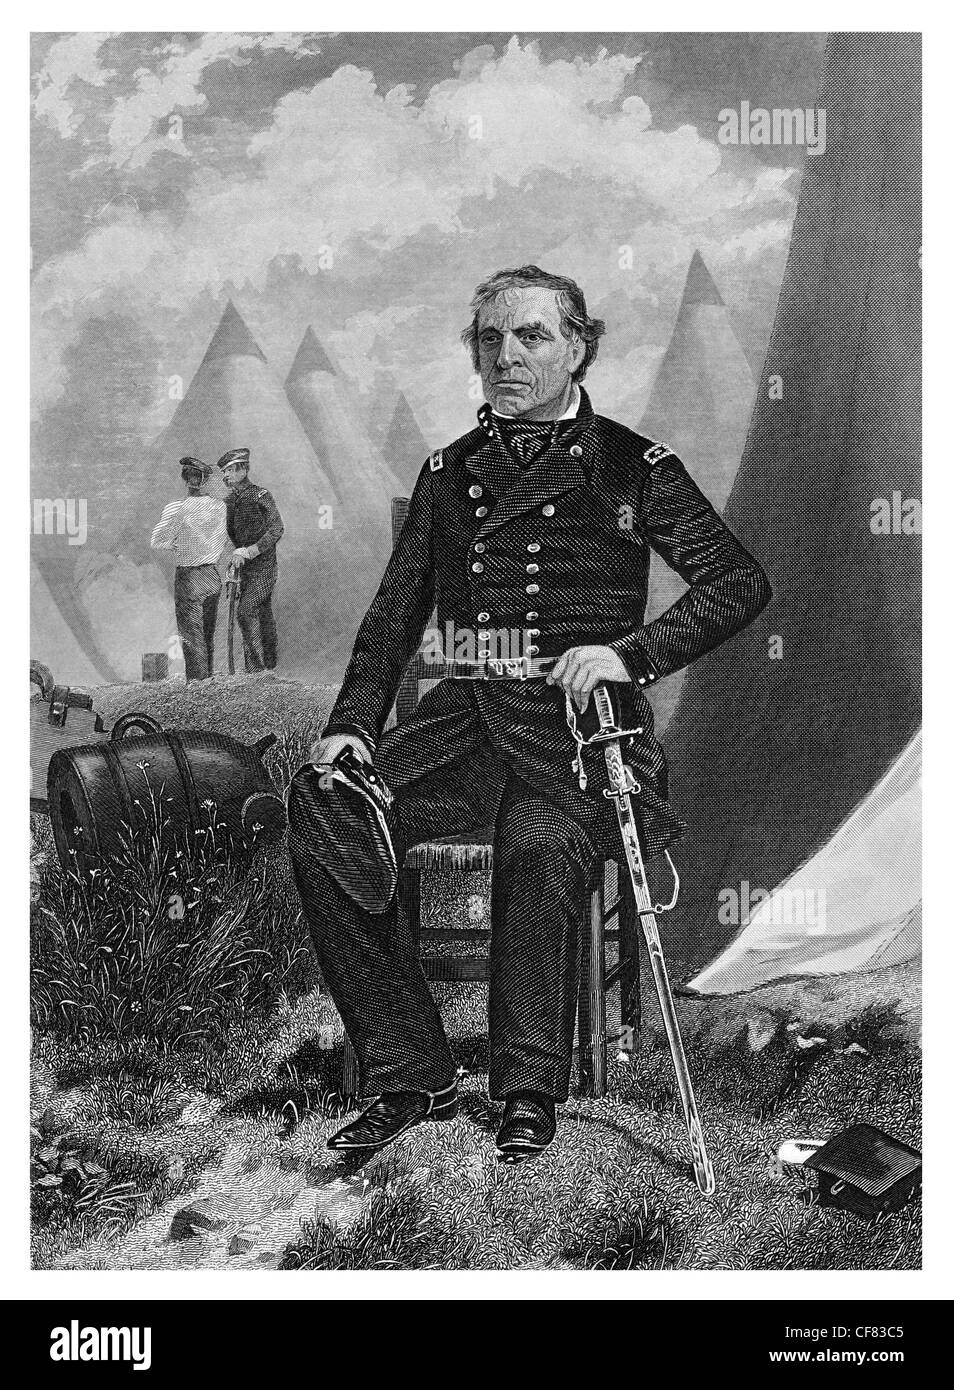 Zachary Taylor, comandante general del ejército de Estados Unidos de 1784 a 1850 whig 12º presidente de los Estados Unidos de 1849 a 1850 Foto de stock